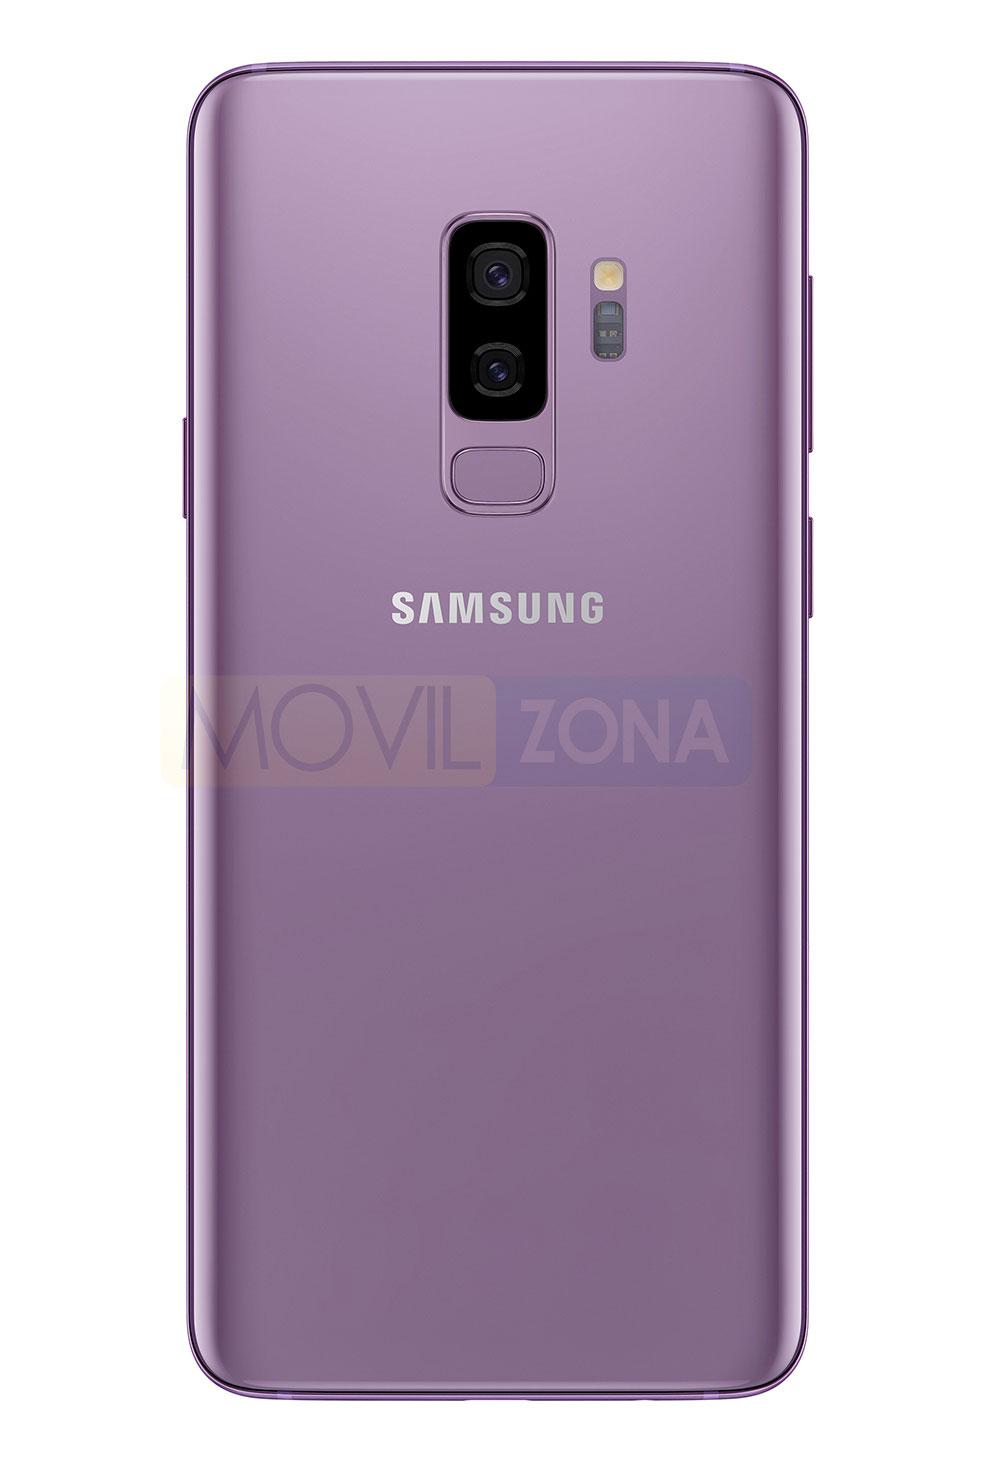 Samsung Galaxy S9+ rosa vista trasera